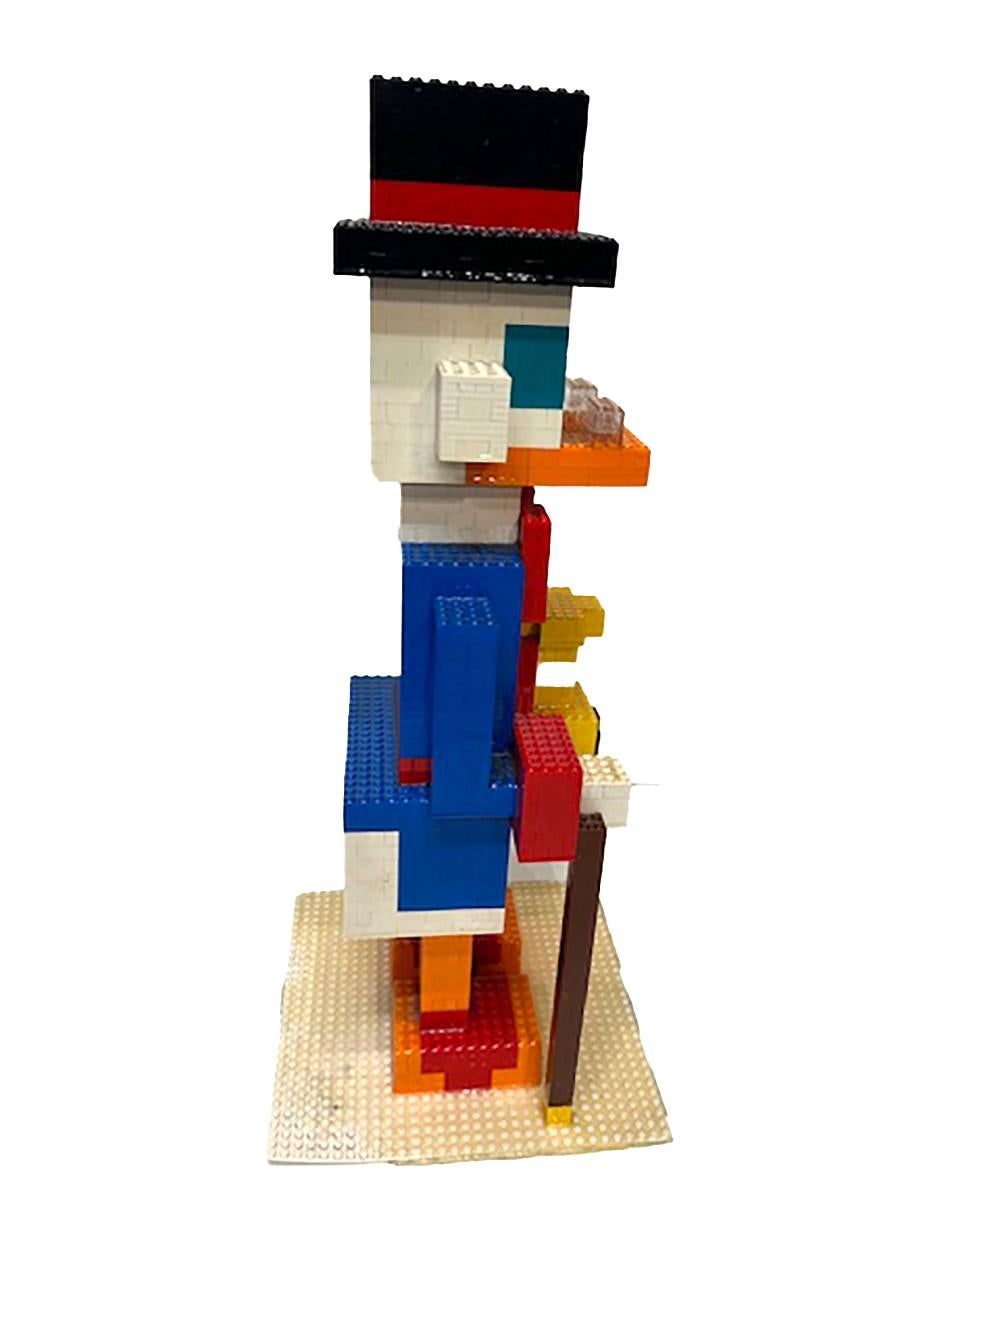 Folk Art Lego Scrooge McDuck For Sale